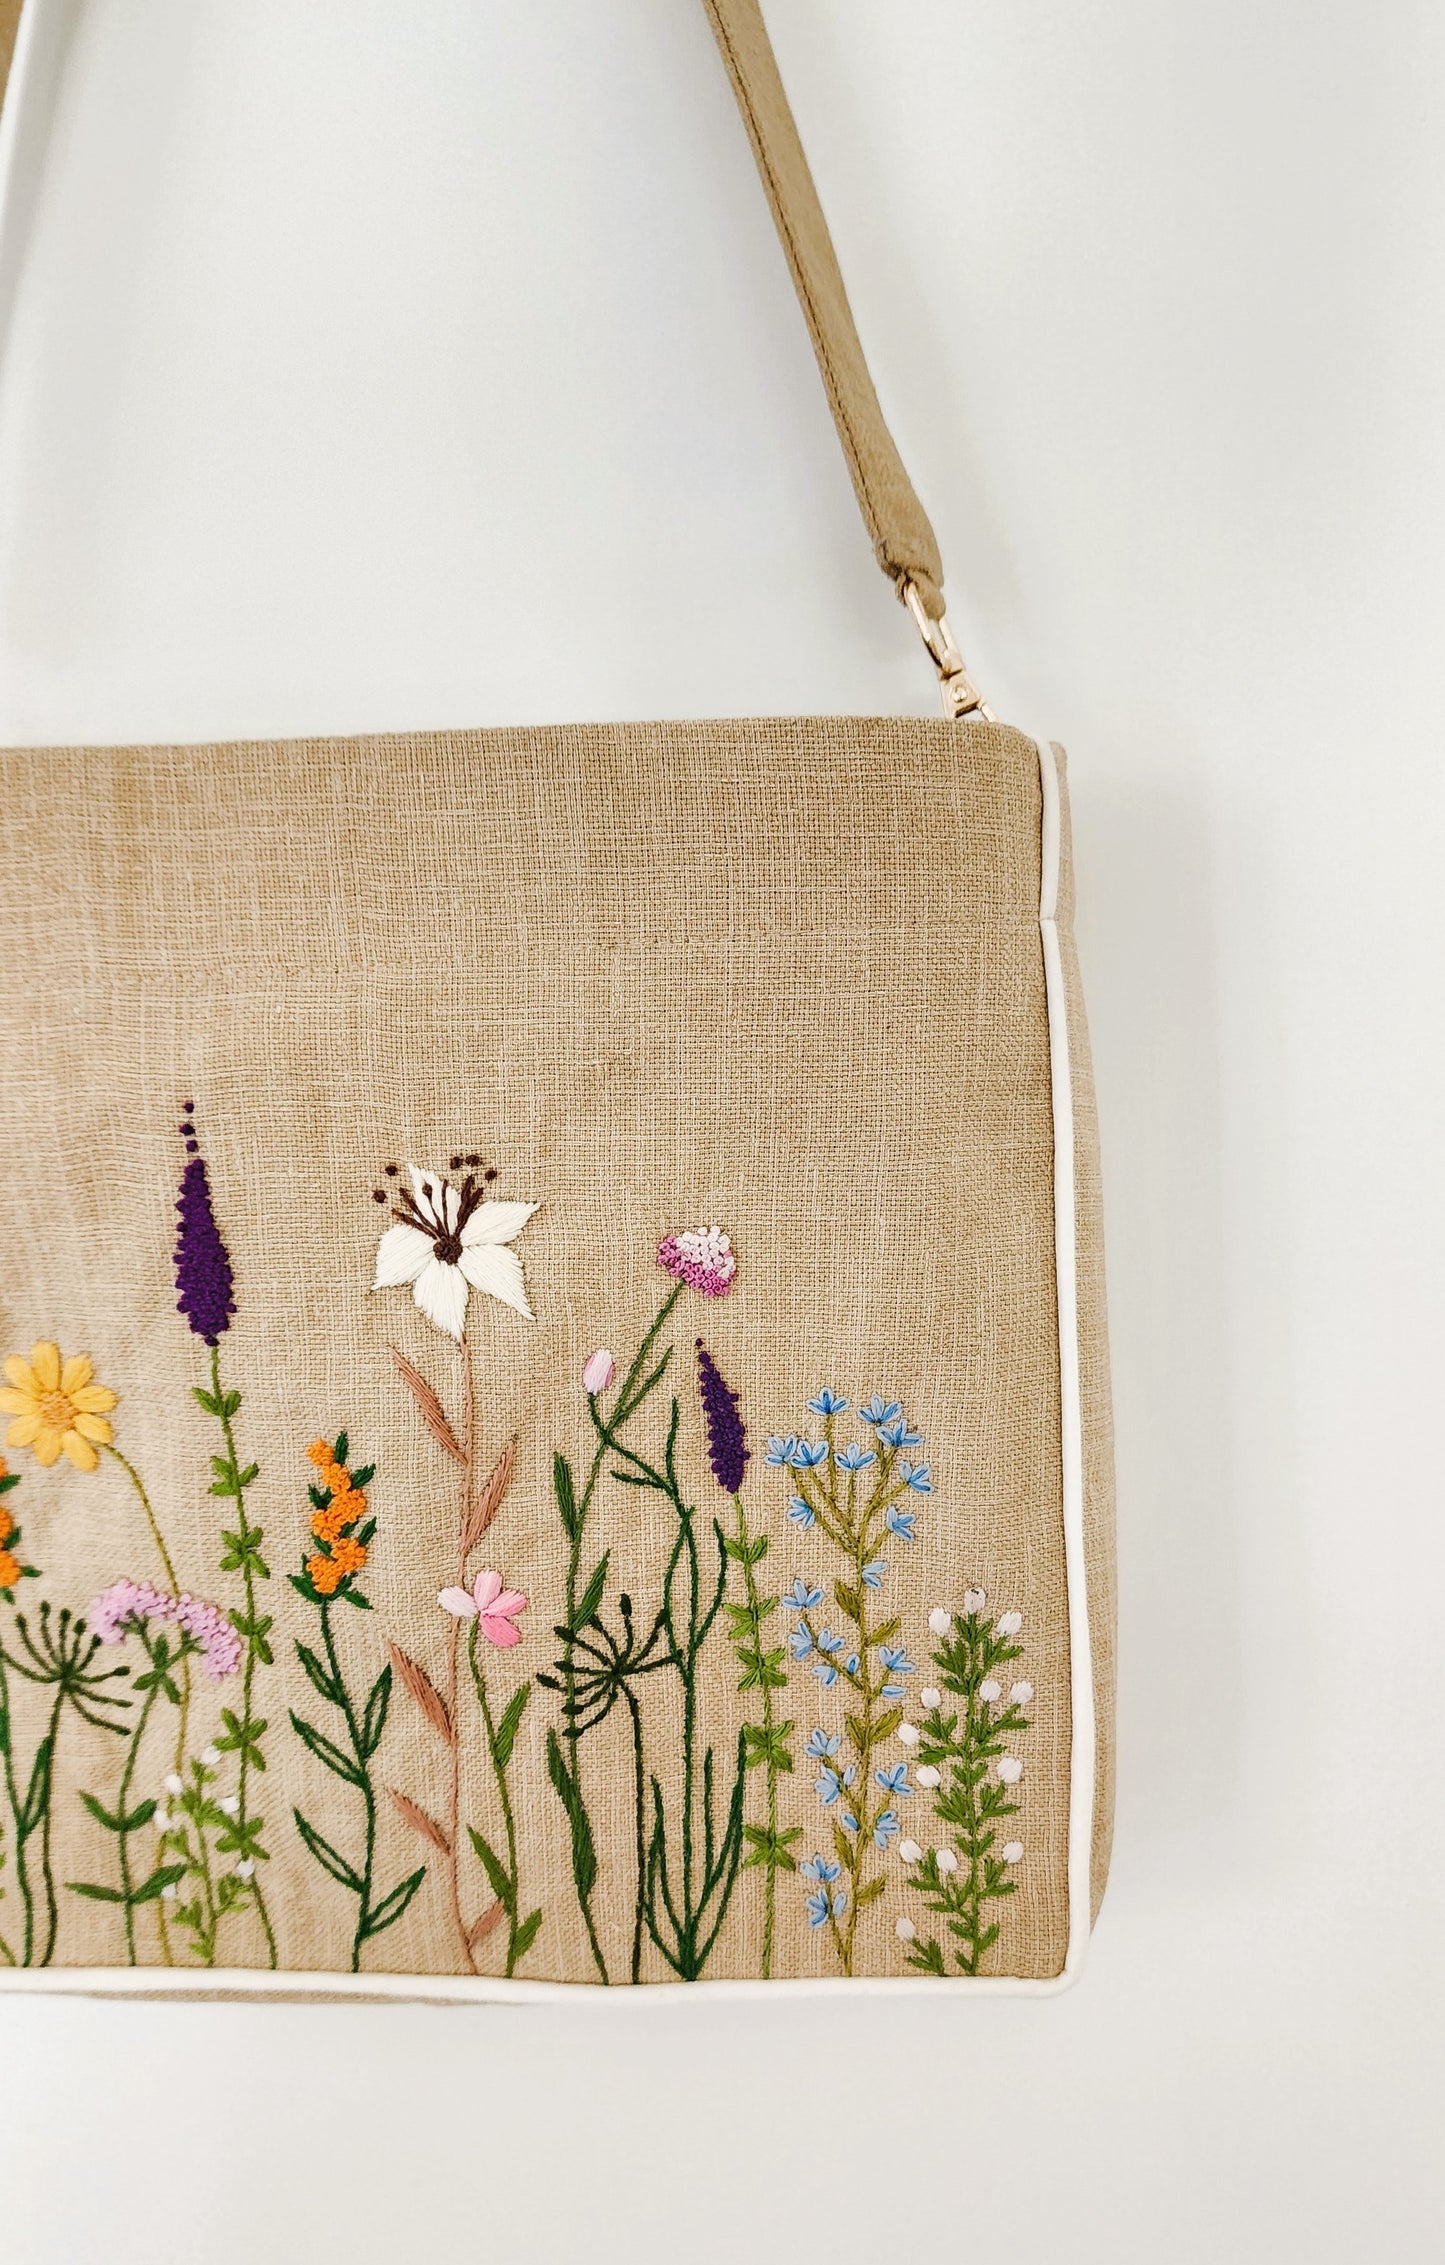 Ikali - Floral Garden - Hand-embroidered Kumstu bo Bag